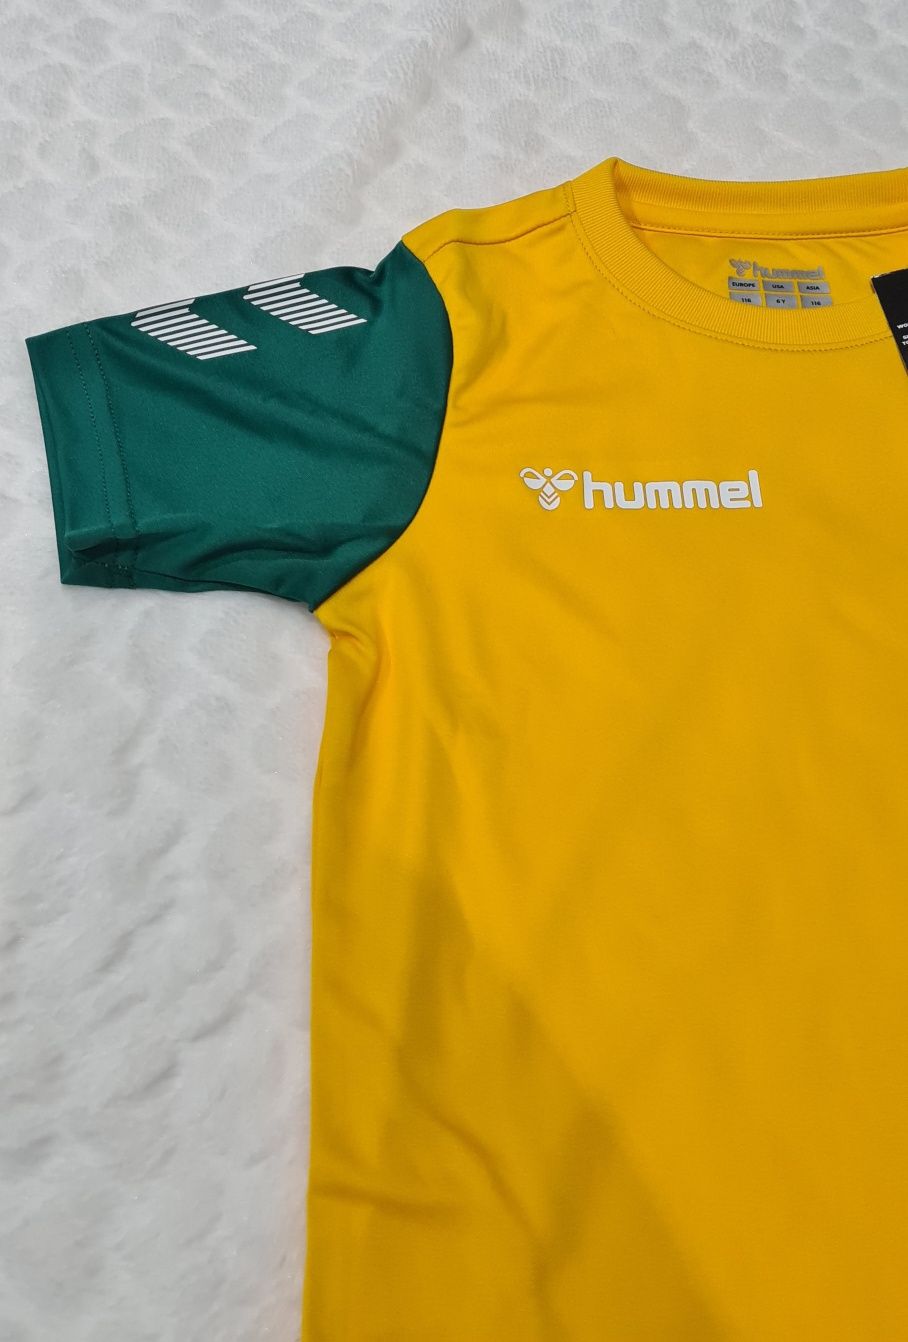 Dziecięca koszulka sportowa Hummel żółto zielona